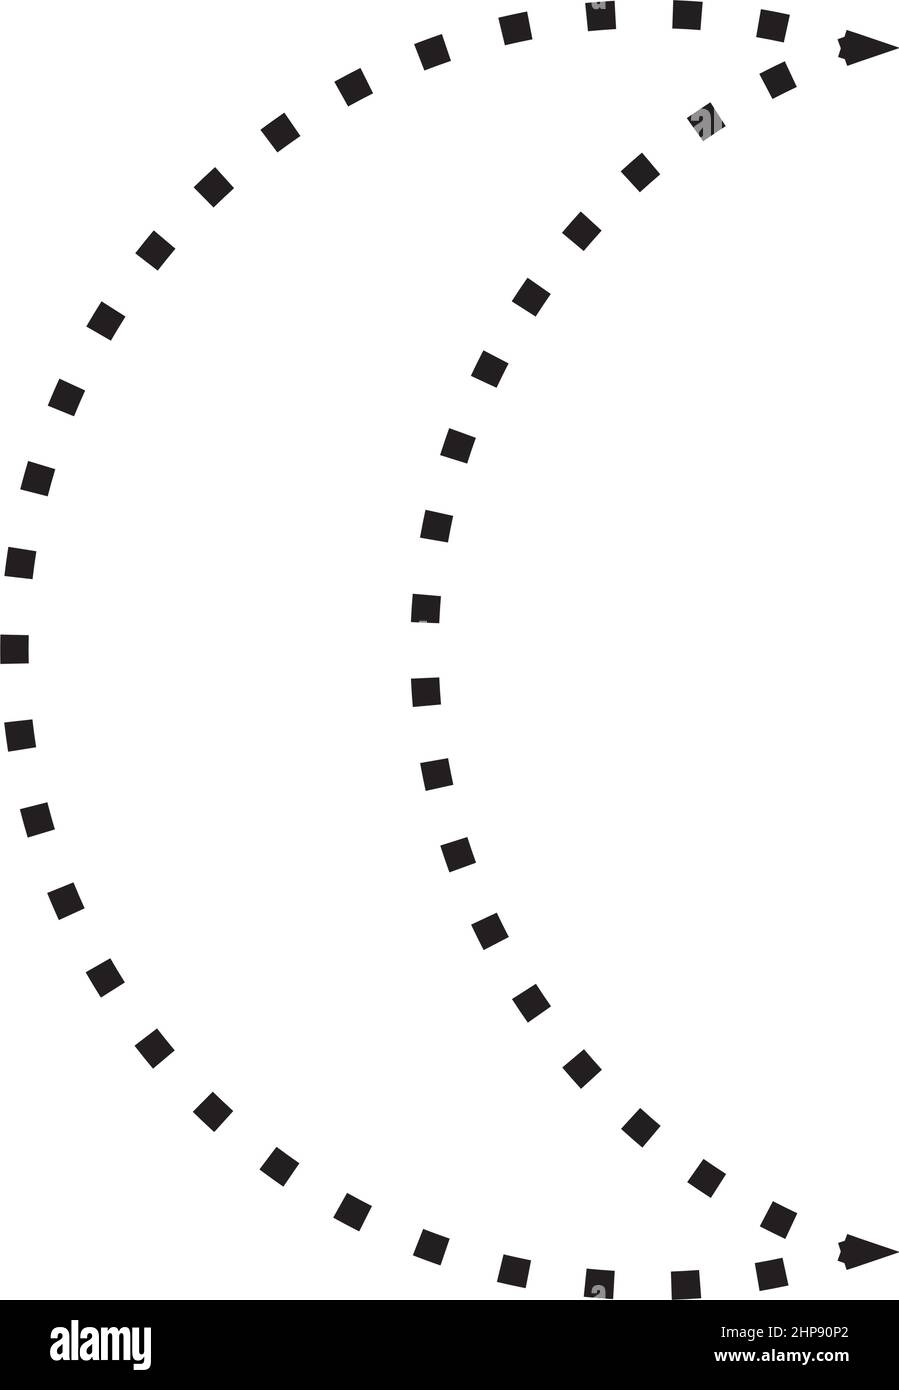 Crescent Symbol gepunktete Form Vektor-Symbol für kreative Grafik-Design-ui-Element in einem Piktogramm Illustration Stock Vektor